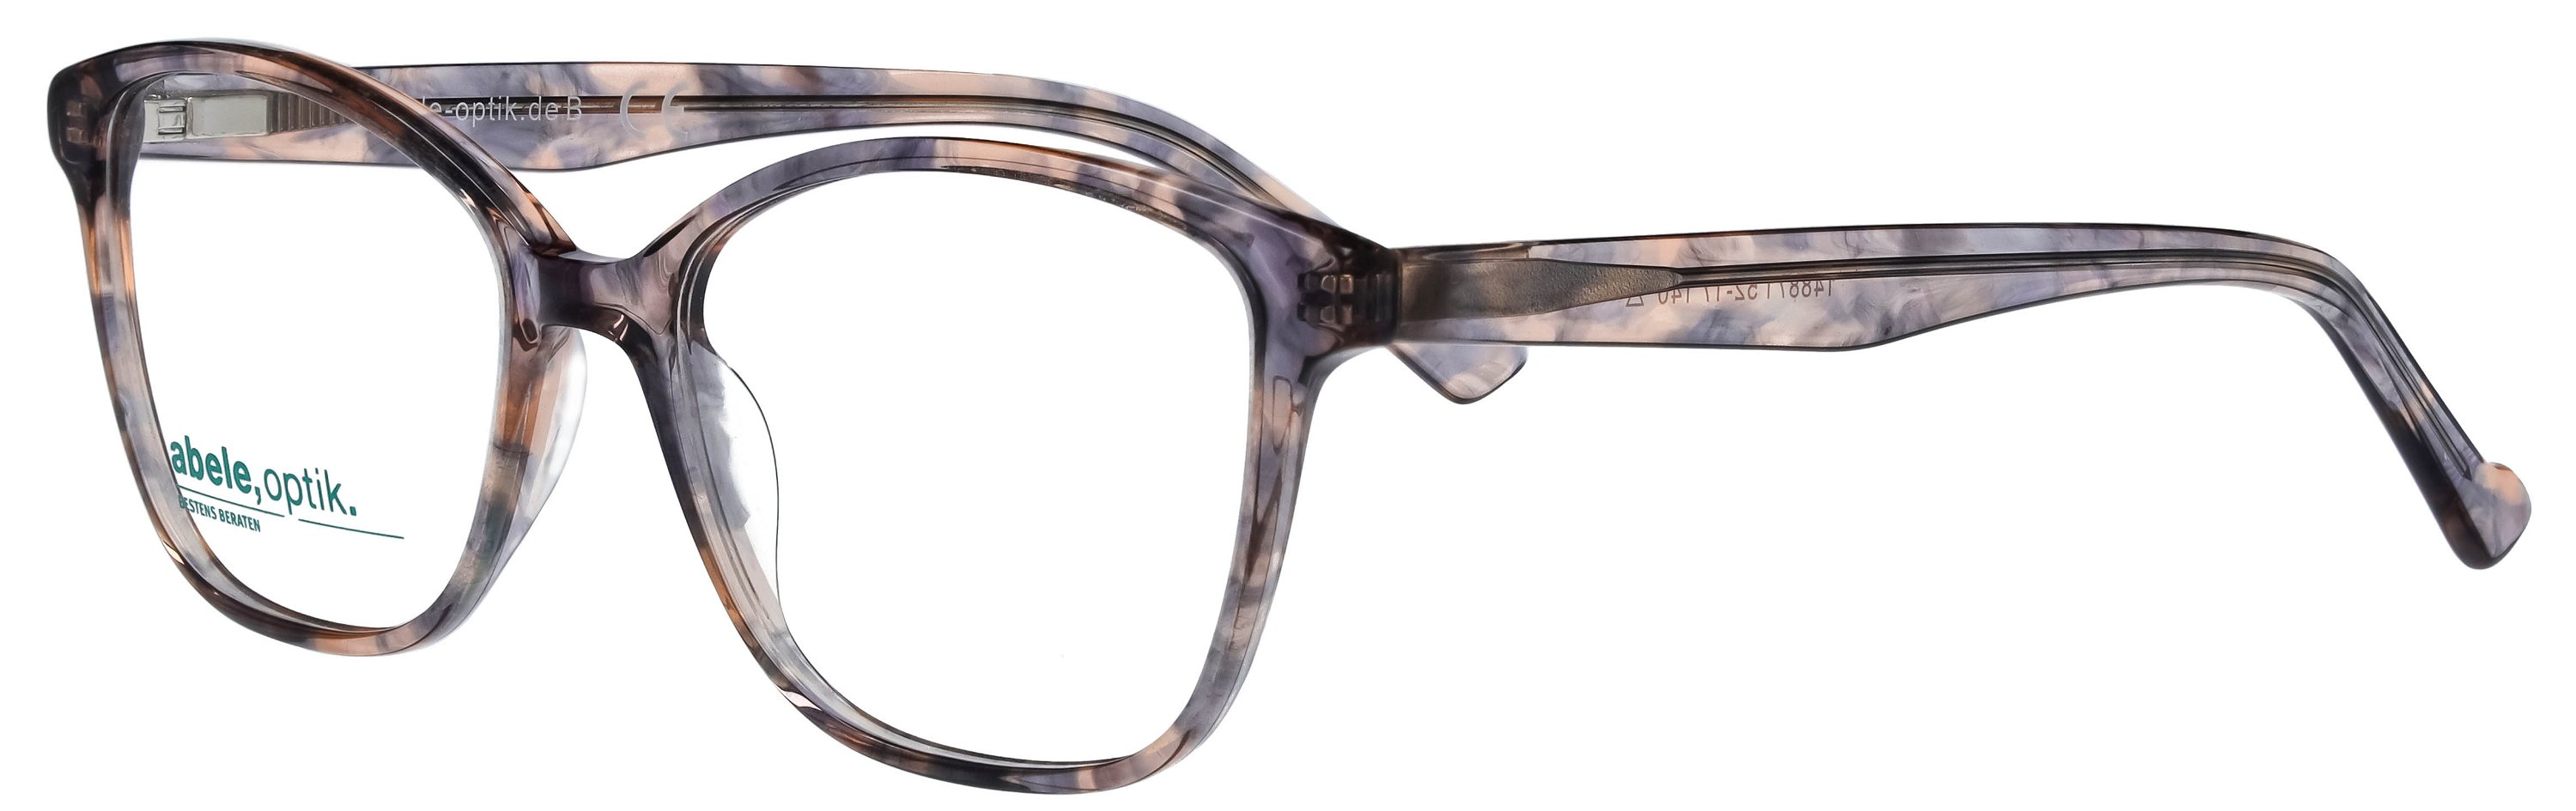 Das Bild zeigt die Korrektionsbrille 148851 von der Marke Abele Optik in graublau/rosa havanna.